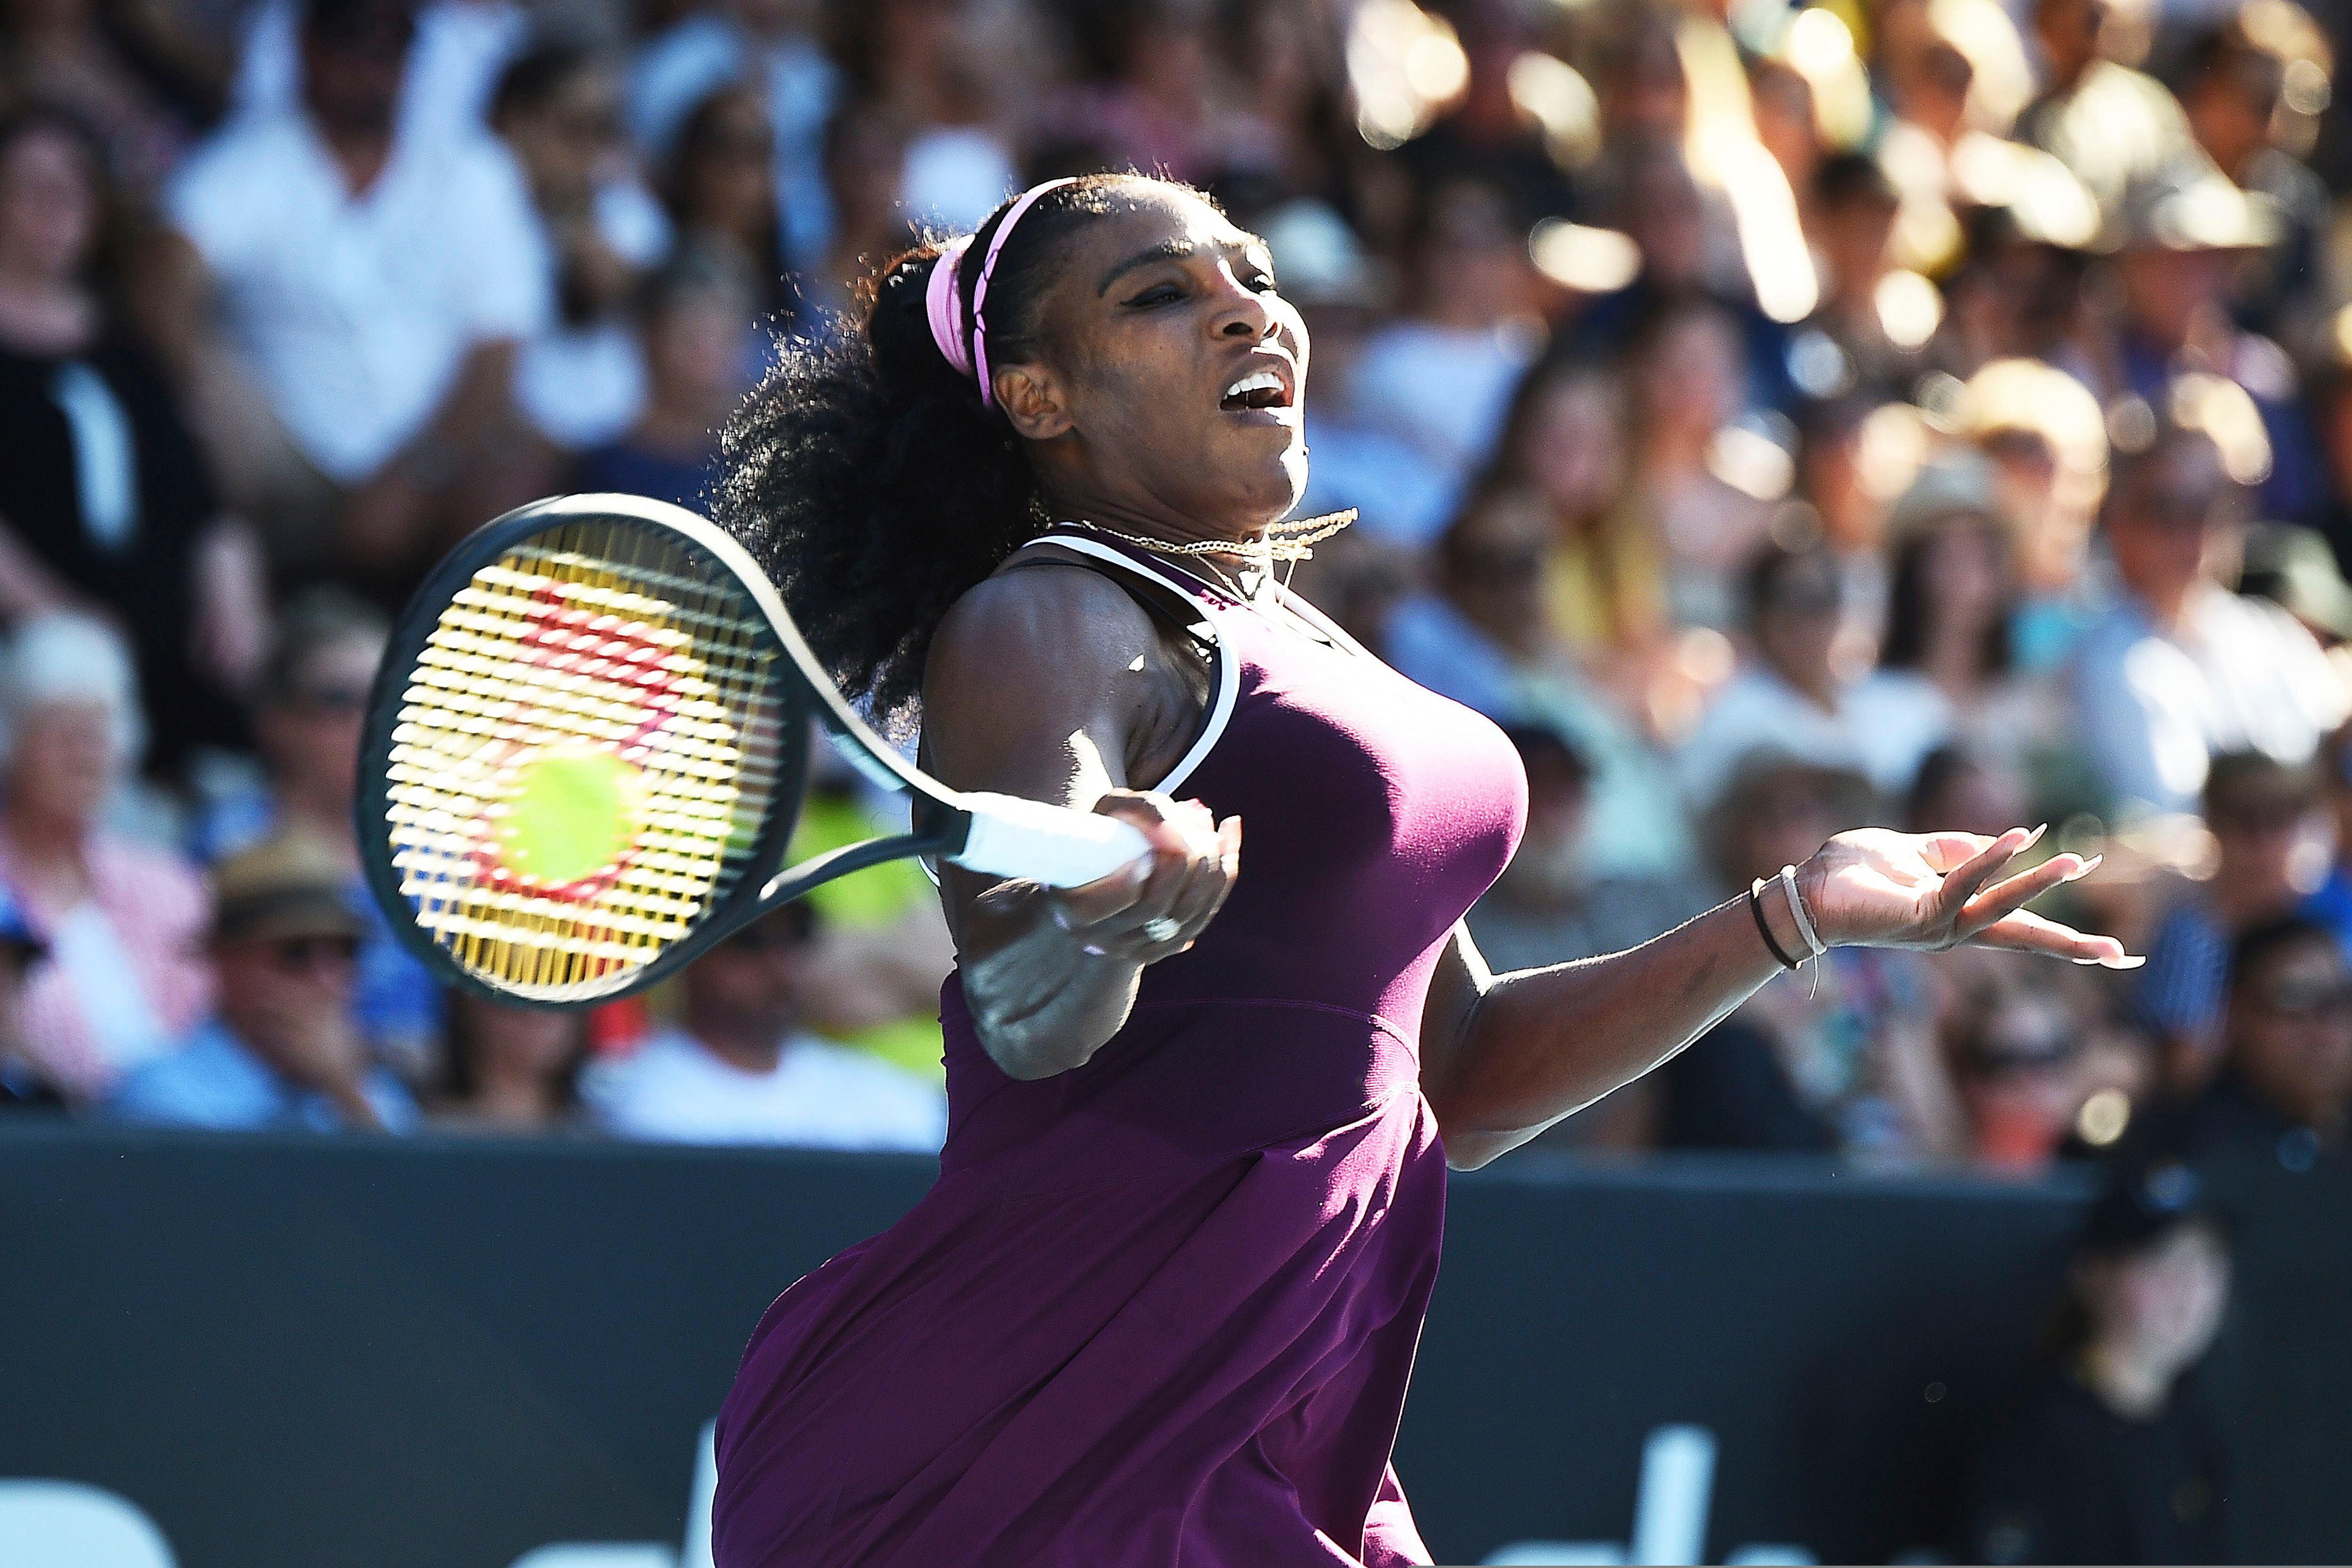 BandSports - QUE MULHER! Após três anos sem títulos, Serena Williams  enfrentou a depressão pós parto e venceu o ASB Classic de Auckland, na Nova  Zelândia. 👏👏 #serenawilliams #serena #quotes #inspiração #frasedodia